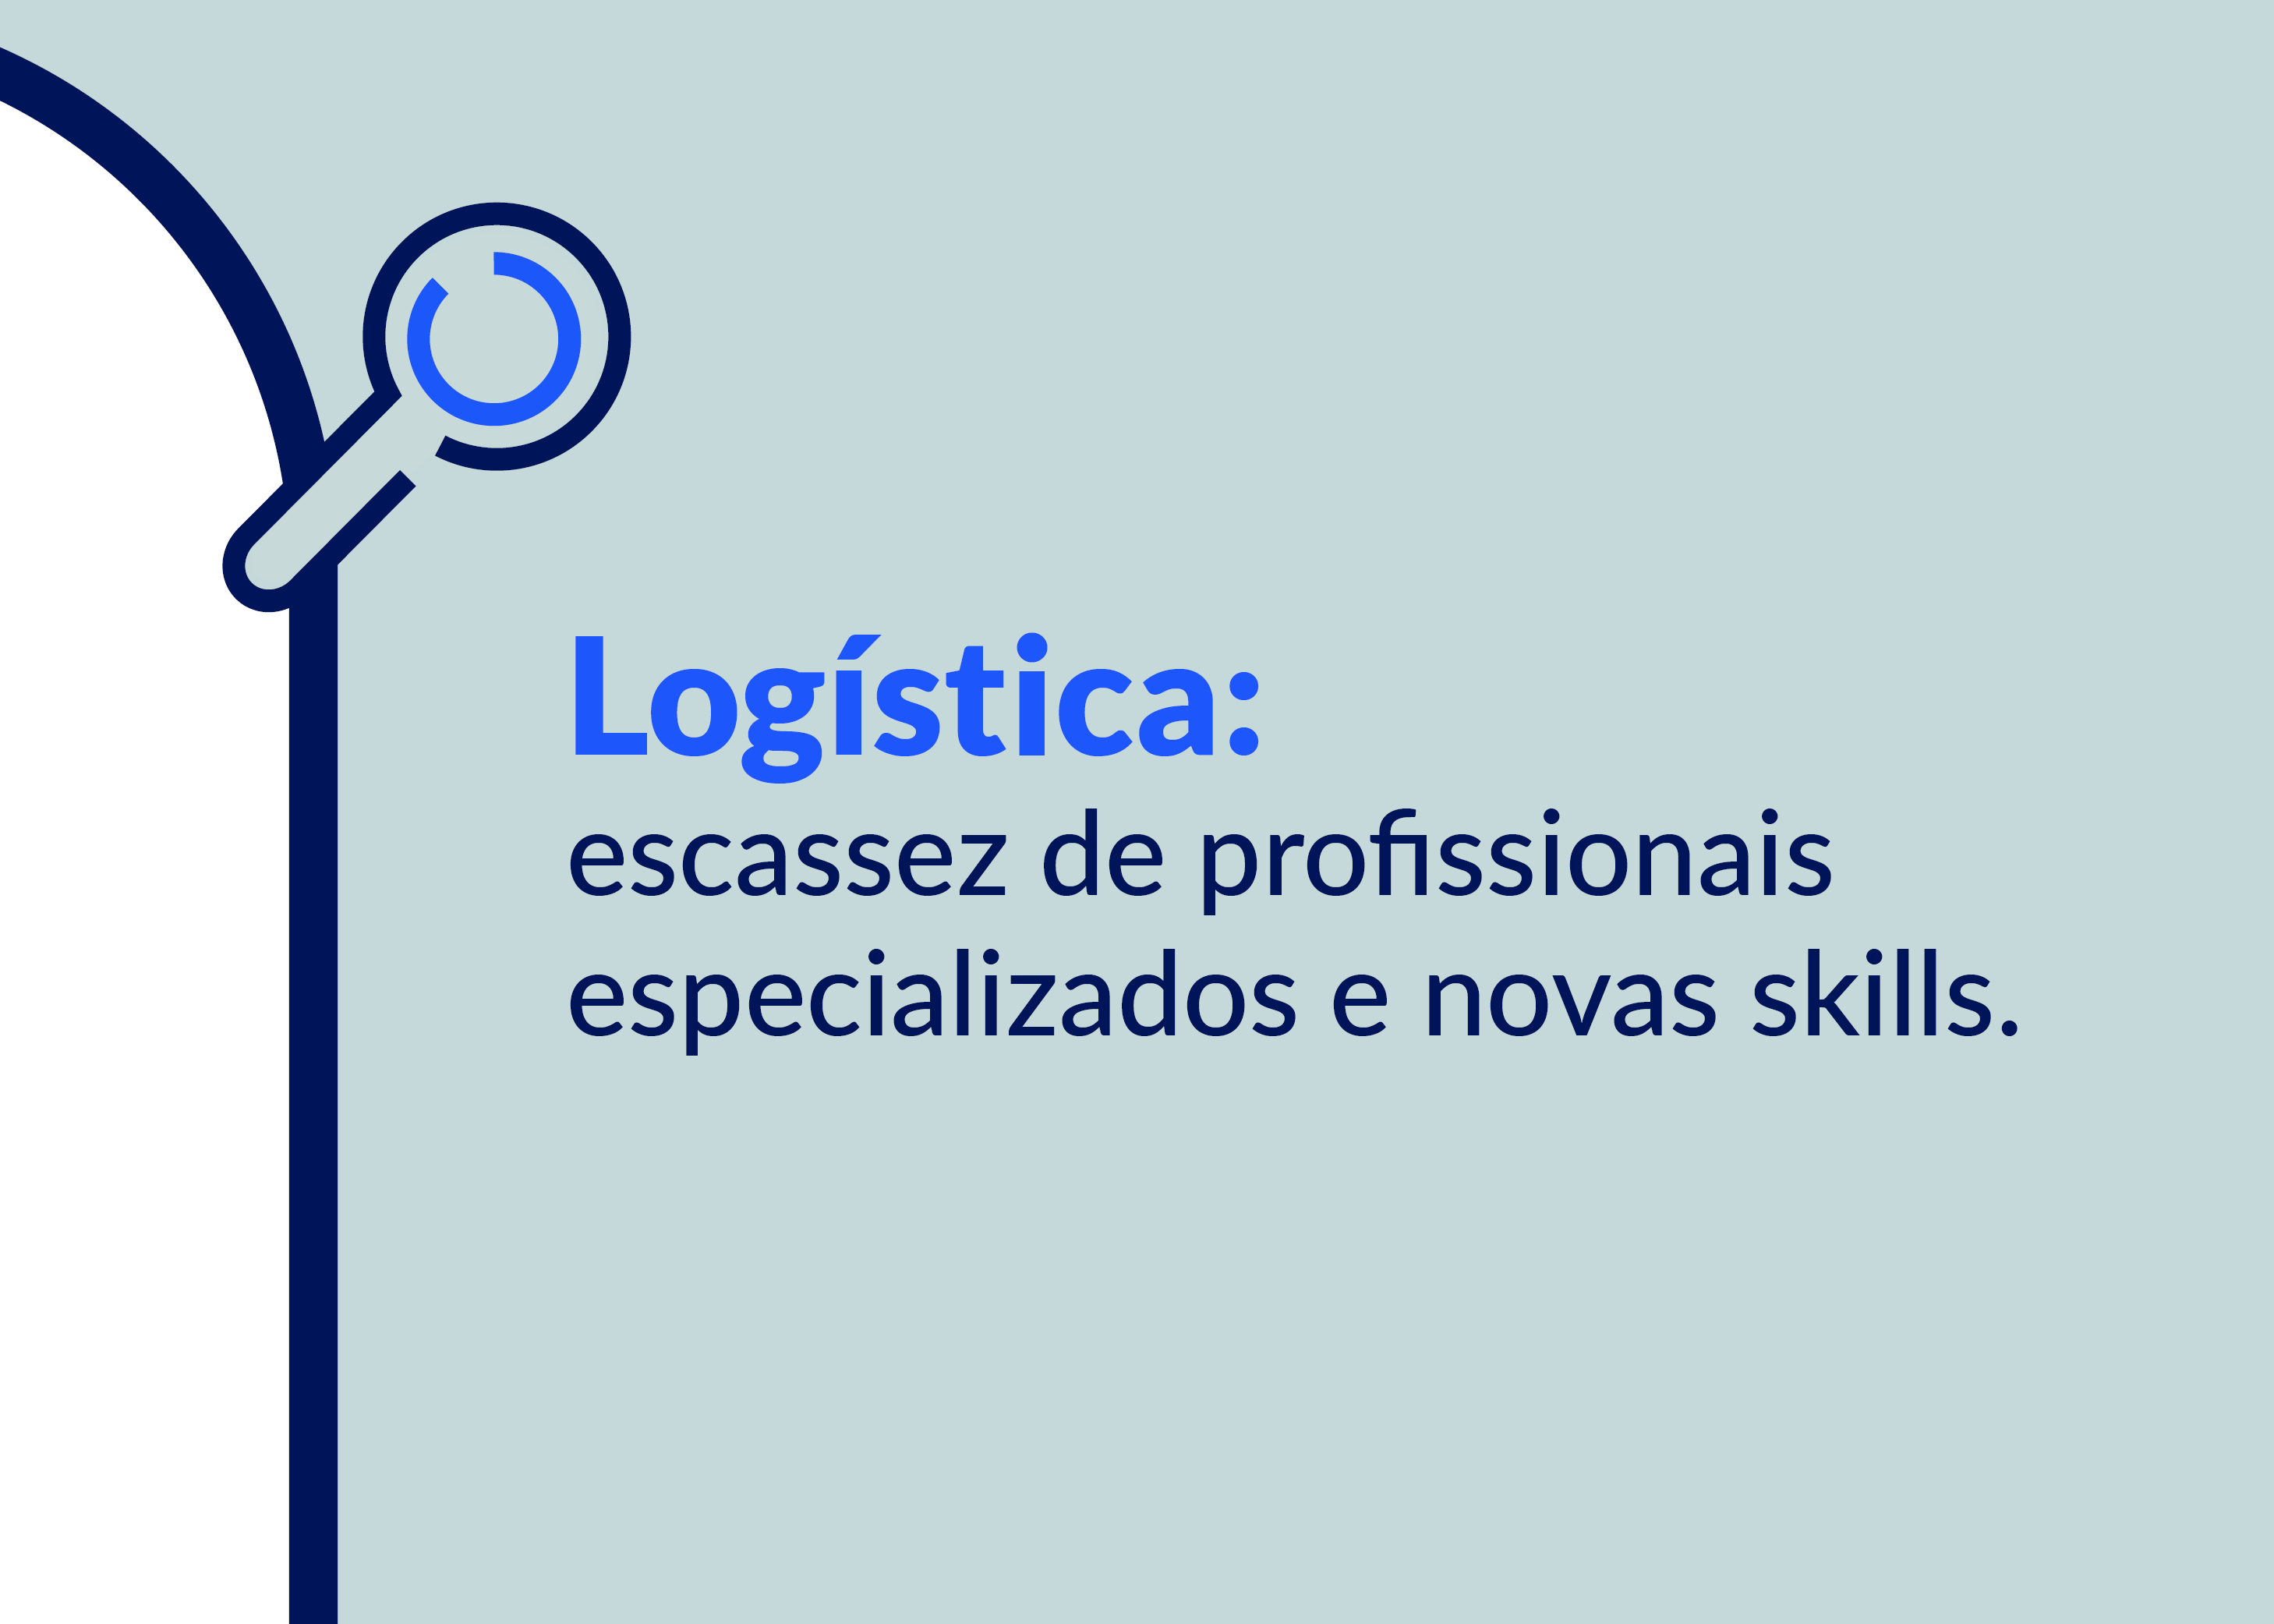 Logística: escassez de profissionais especializados e novas skills.